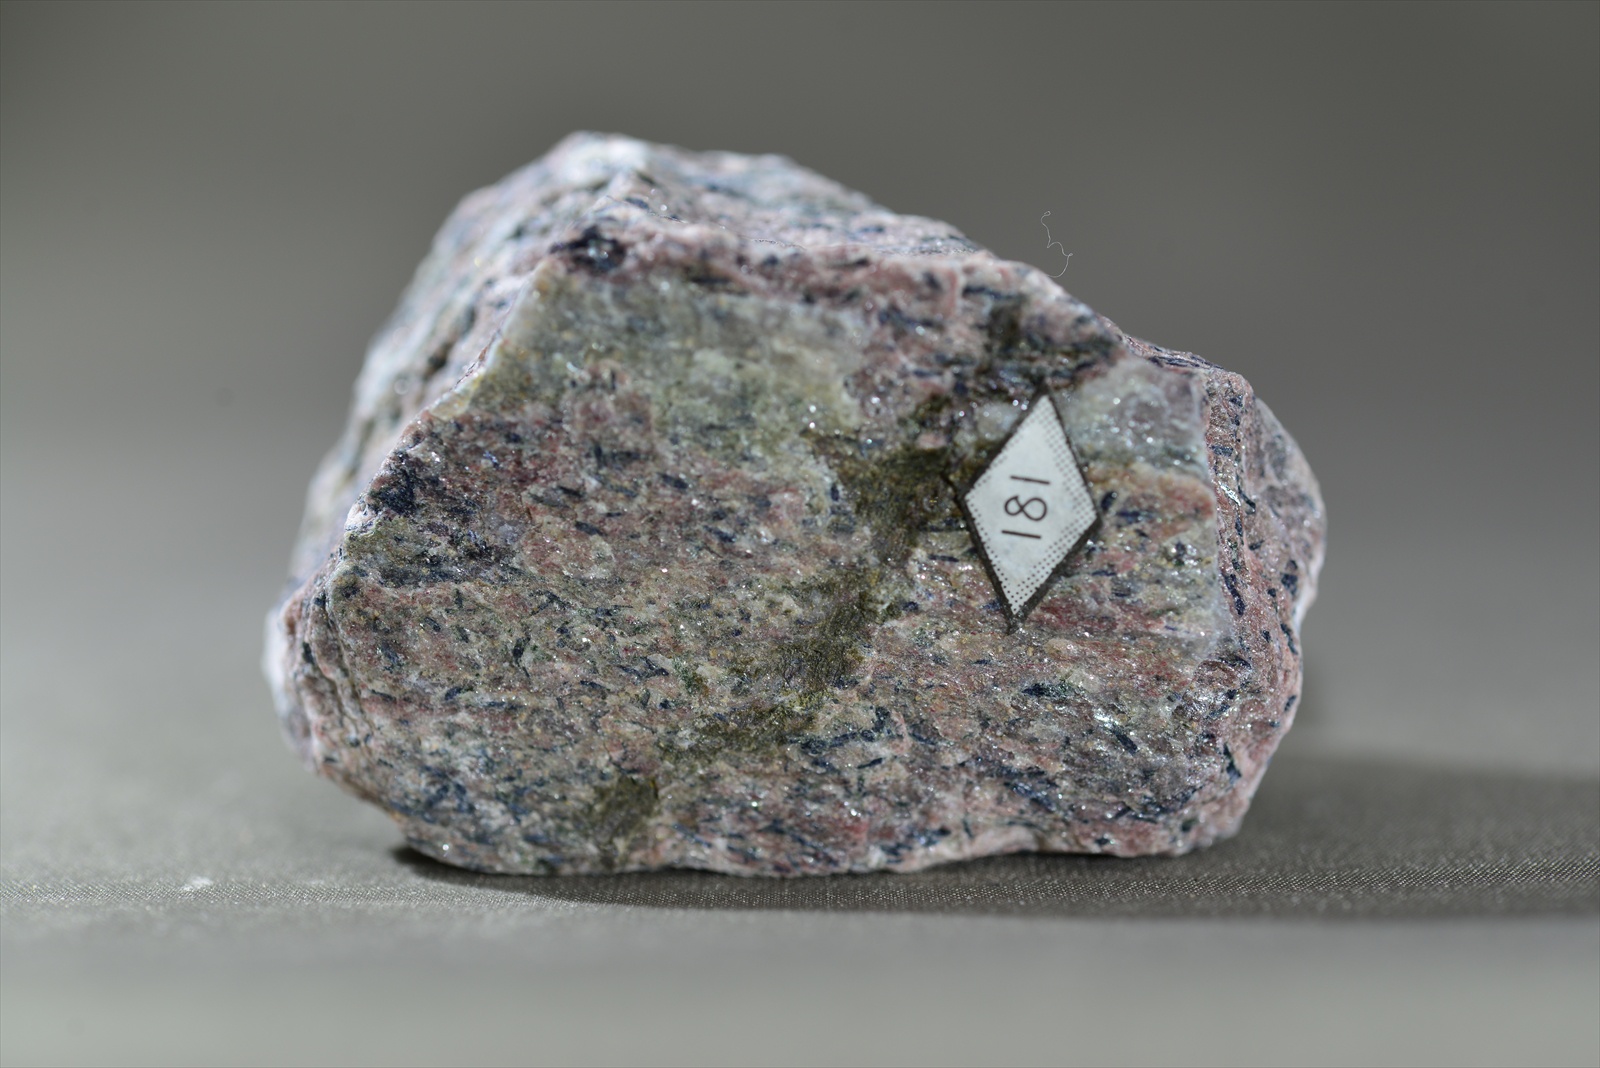 アルカリ角閃石白雲母石英片岩(Alkali amphibole-muscovite-quartz schist)